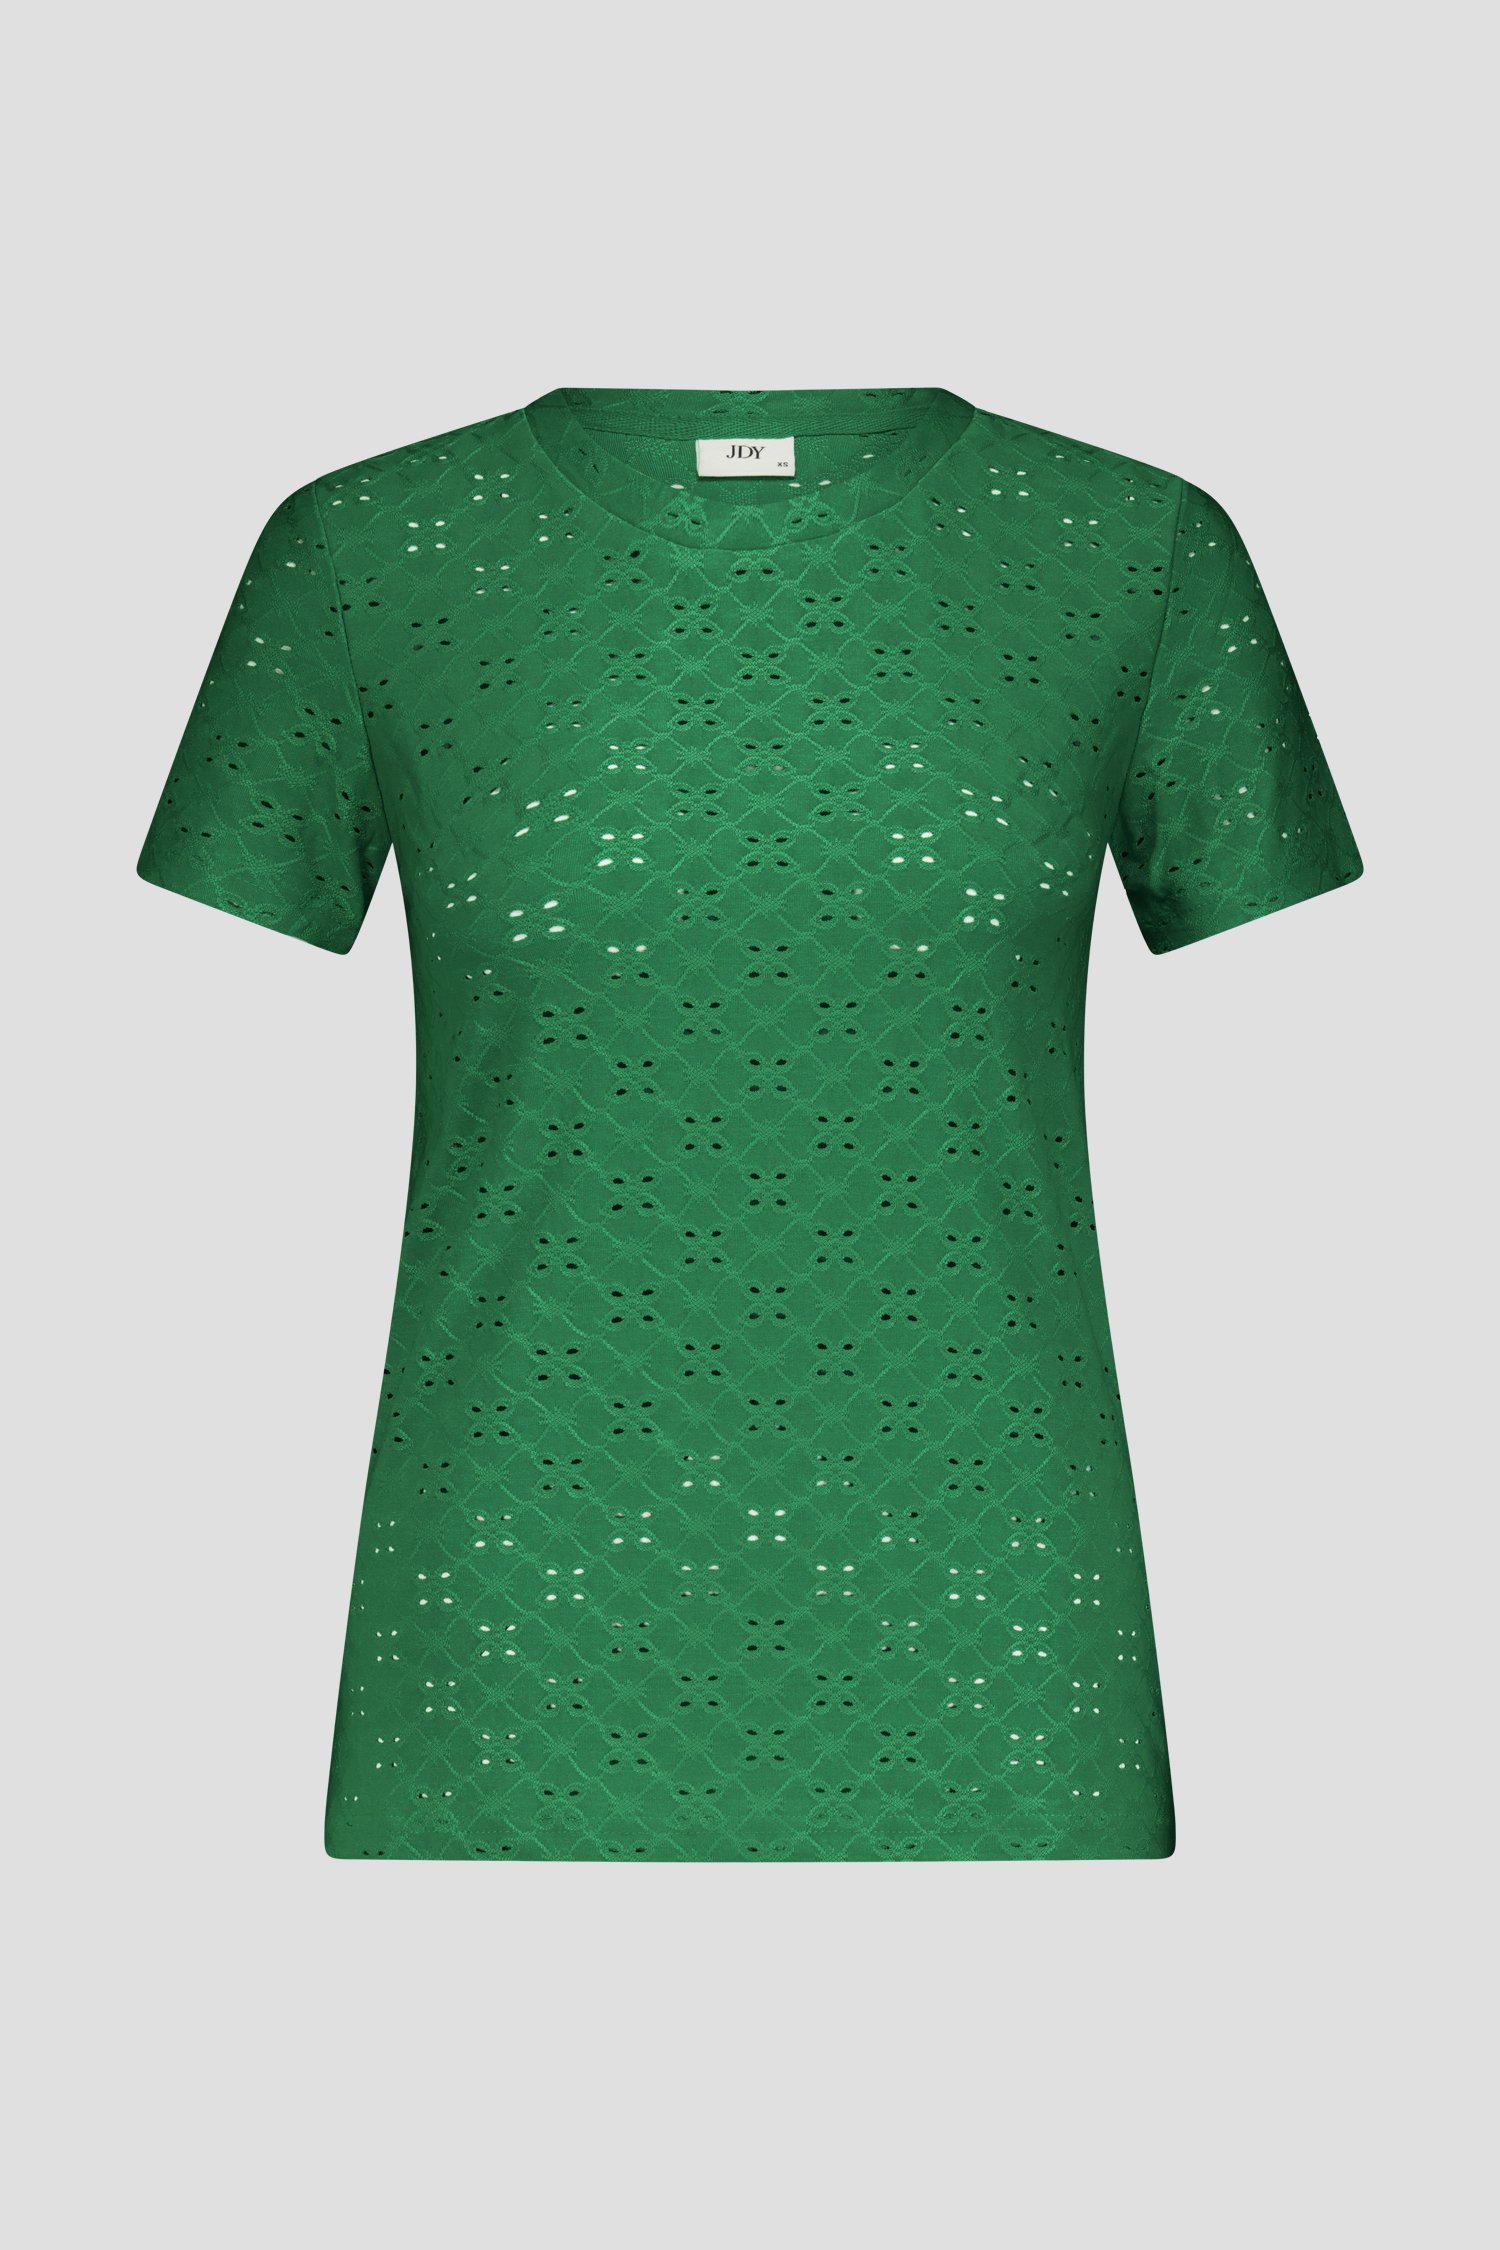 Groen T-shirt met broderie Anglaise van JDY voor Dames